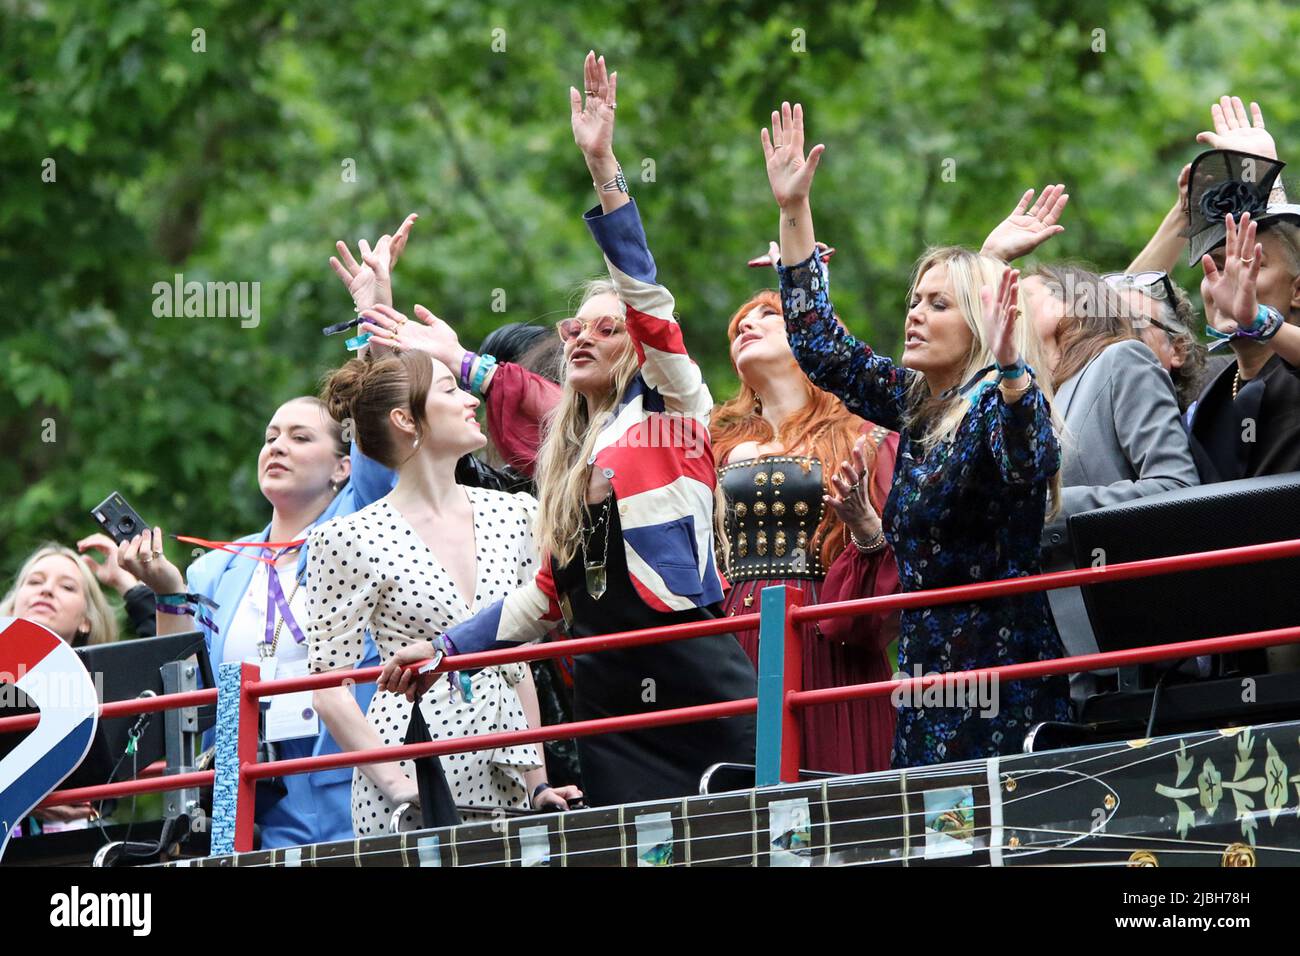 (De gauche à droite) Phoebe Harriet Dynevor est aux côtés de Charlotte Tilbury, Kate Moss & Patricia ( Patsy ) Jude Kensit. Tous les quatre sont sur un bus à toit ouvert au Platinum Jubilee Pageant 2022 dans le Mall, Londres. Banque D'Images